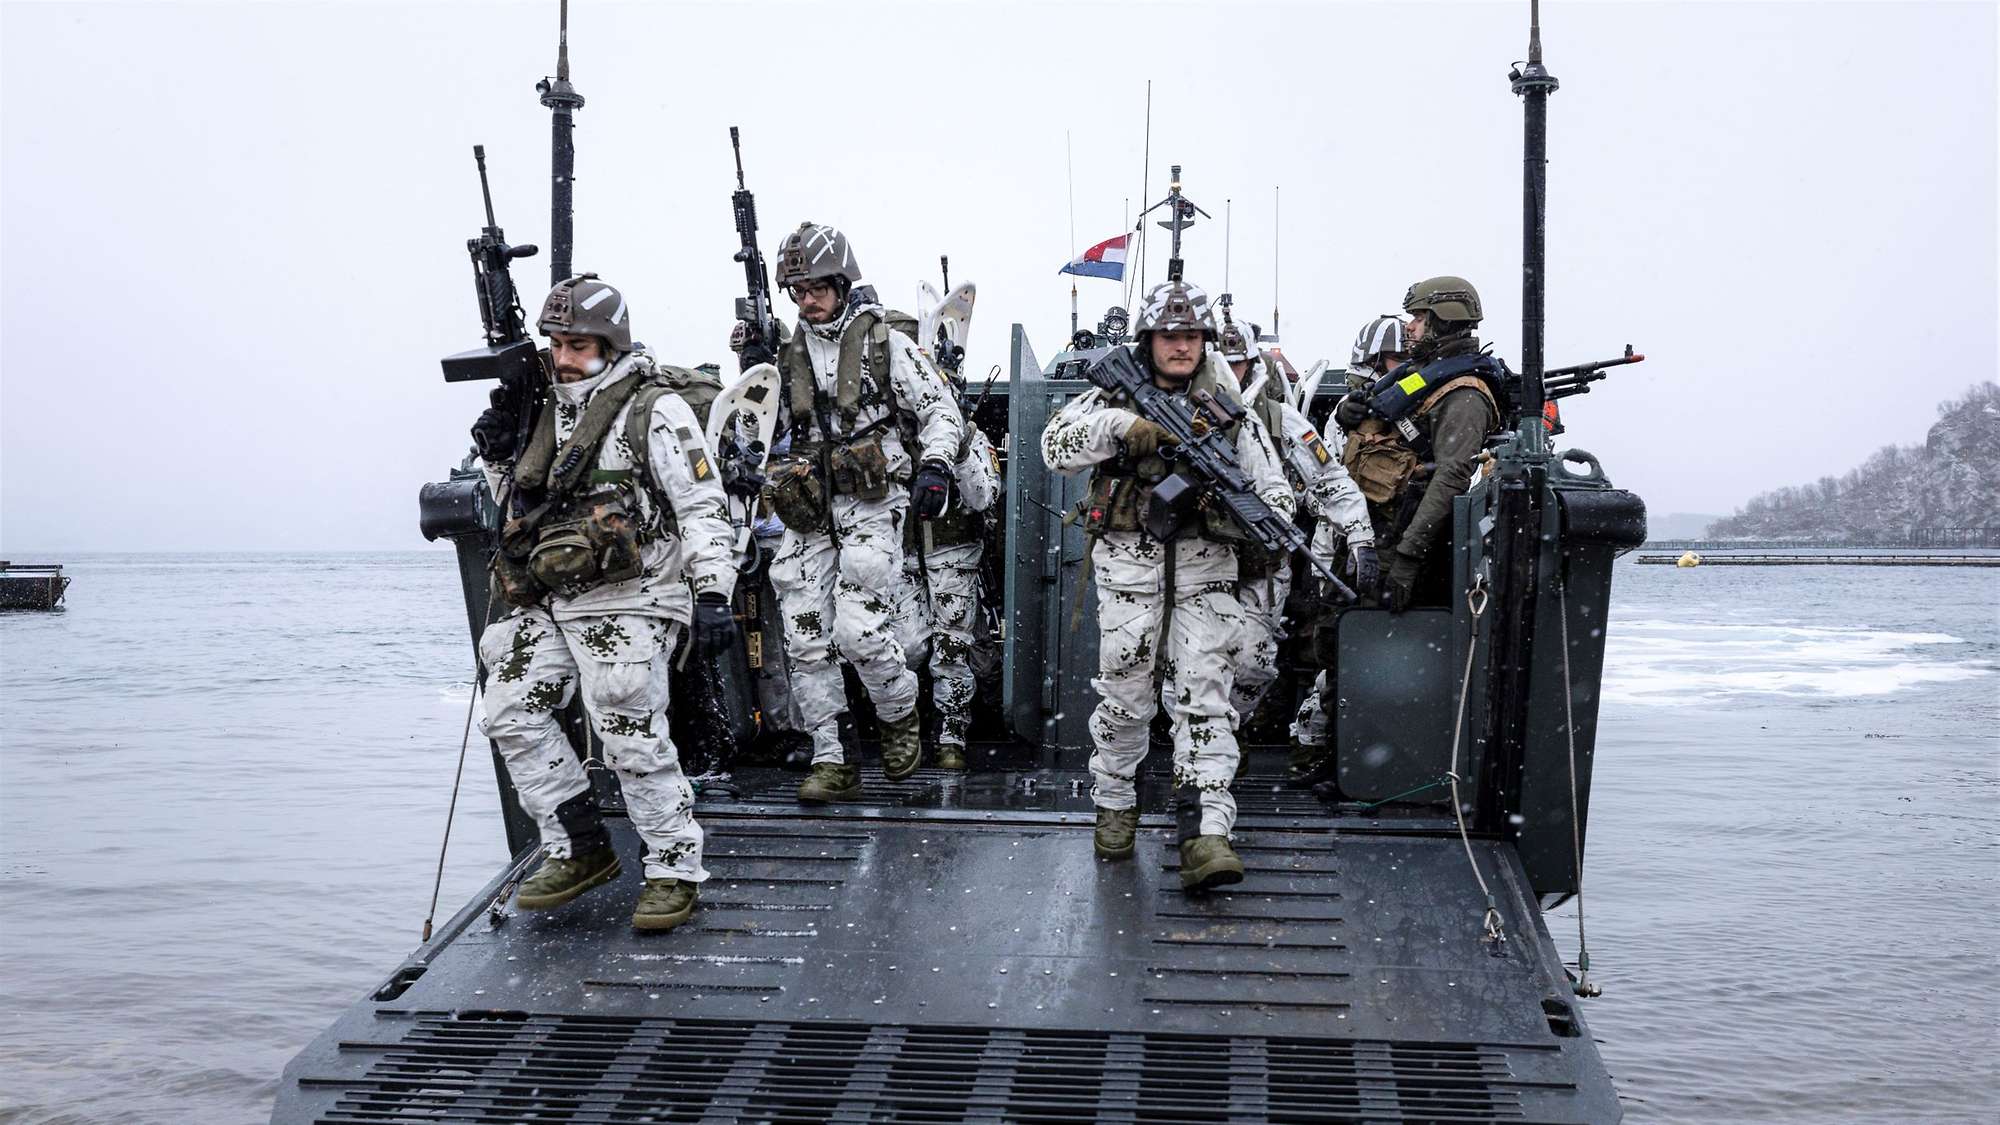 Marinesoldaten übern in der Arktis, Foto: